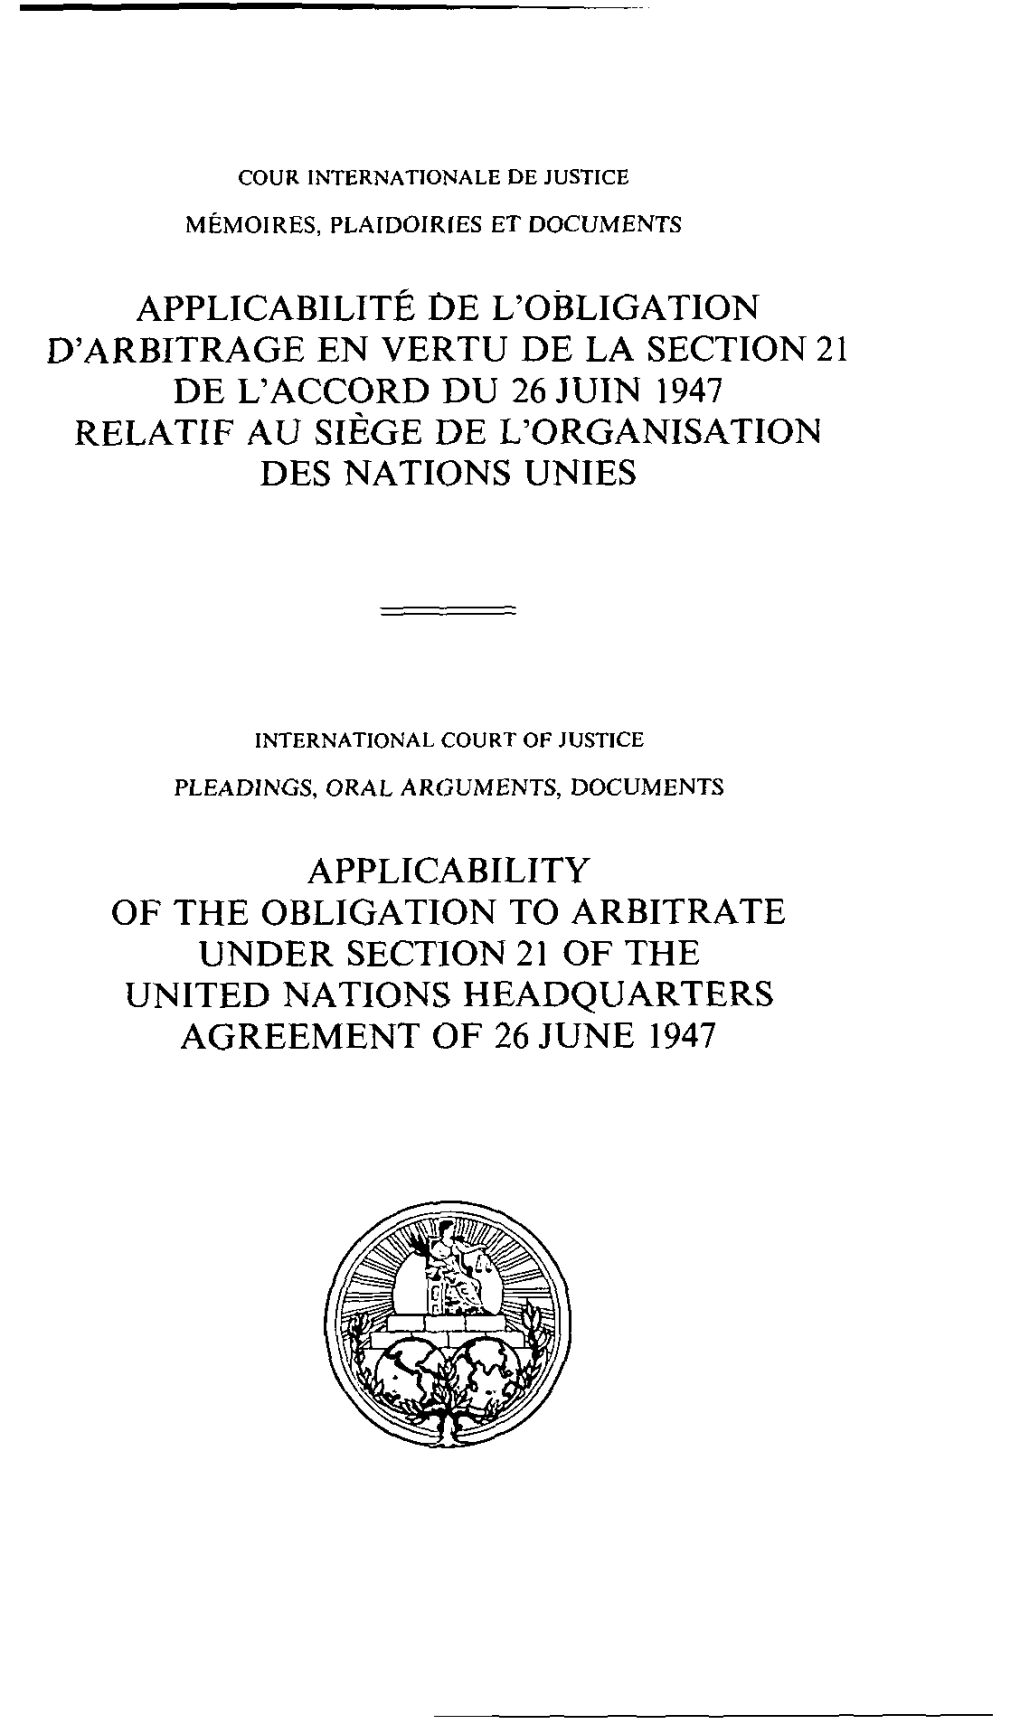 Applicabilité De L'obligation D'arbitrage En Vertu De La Section 21 De L'accord